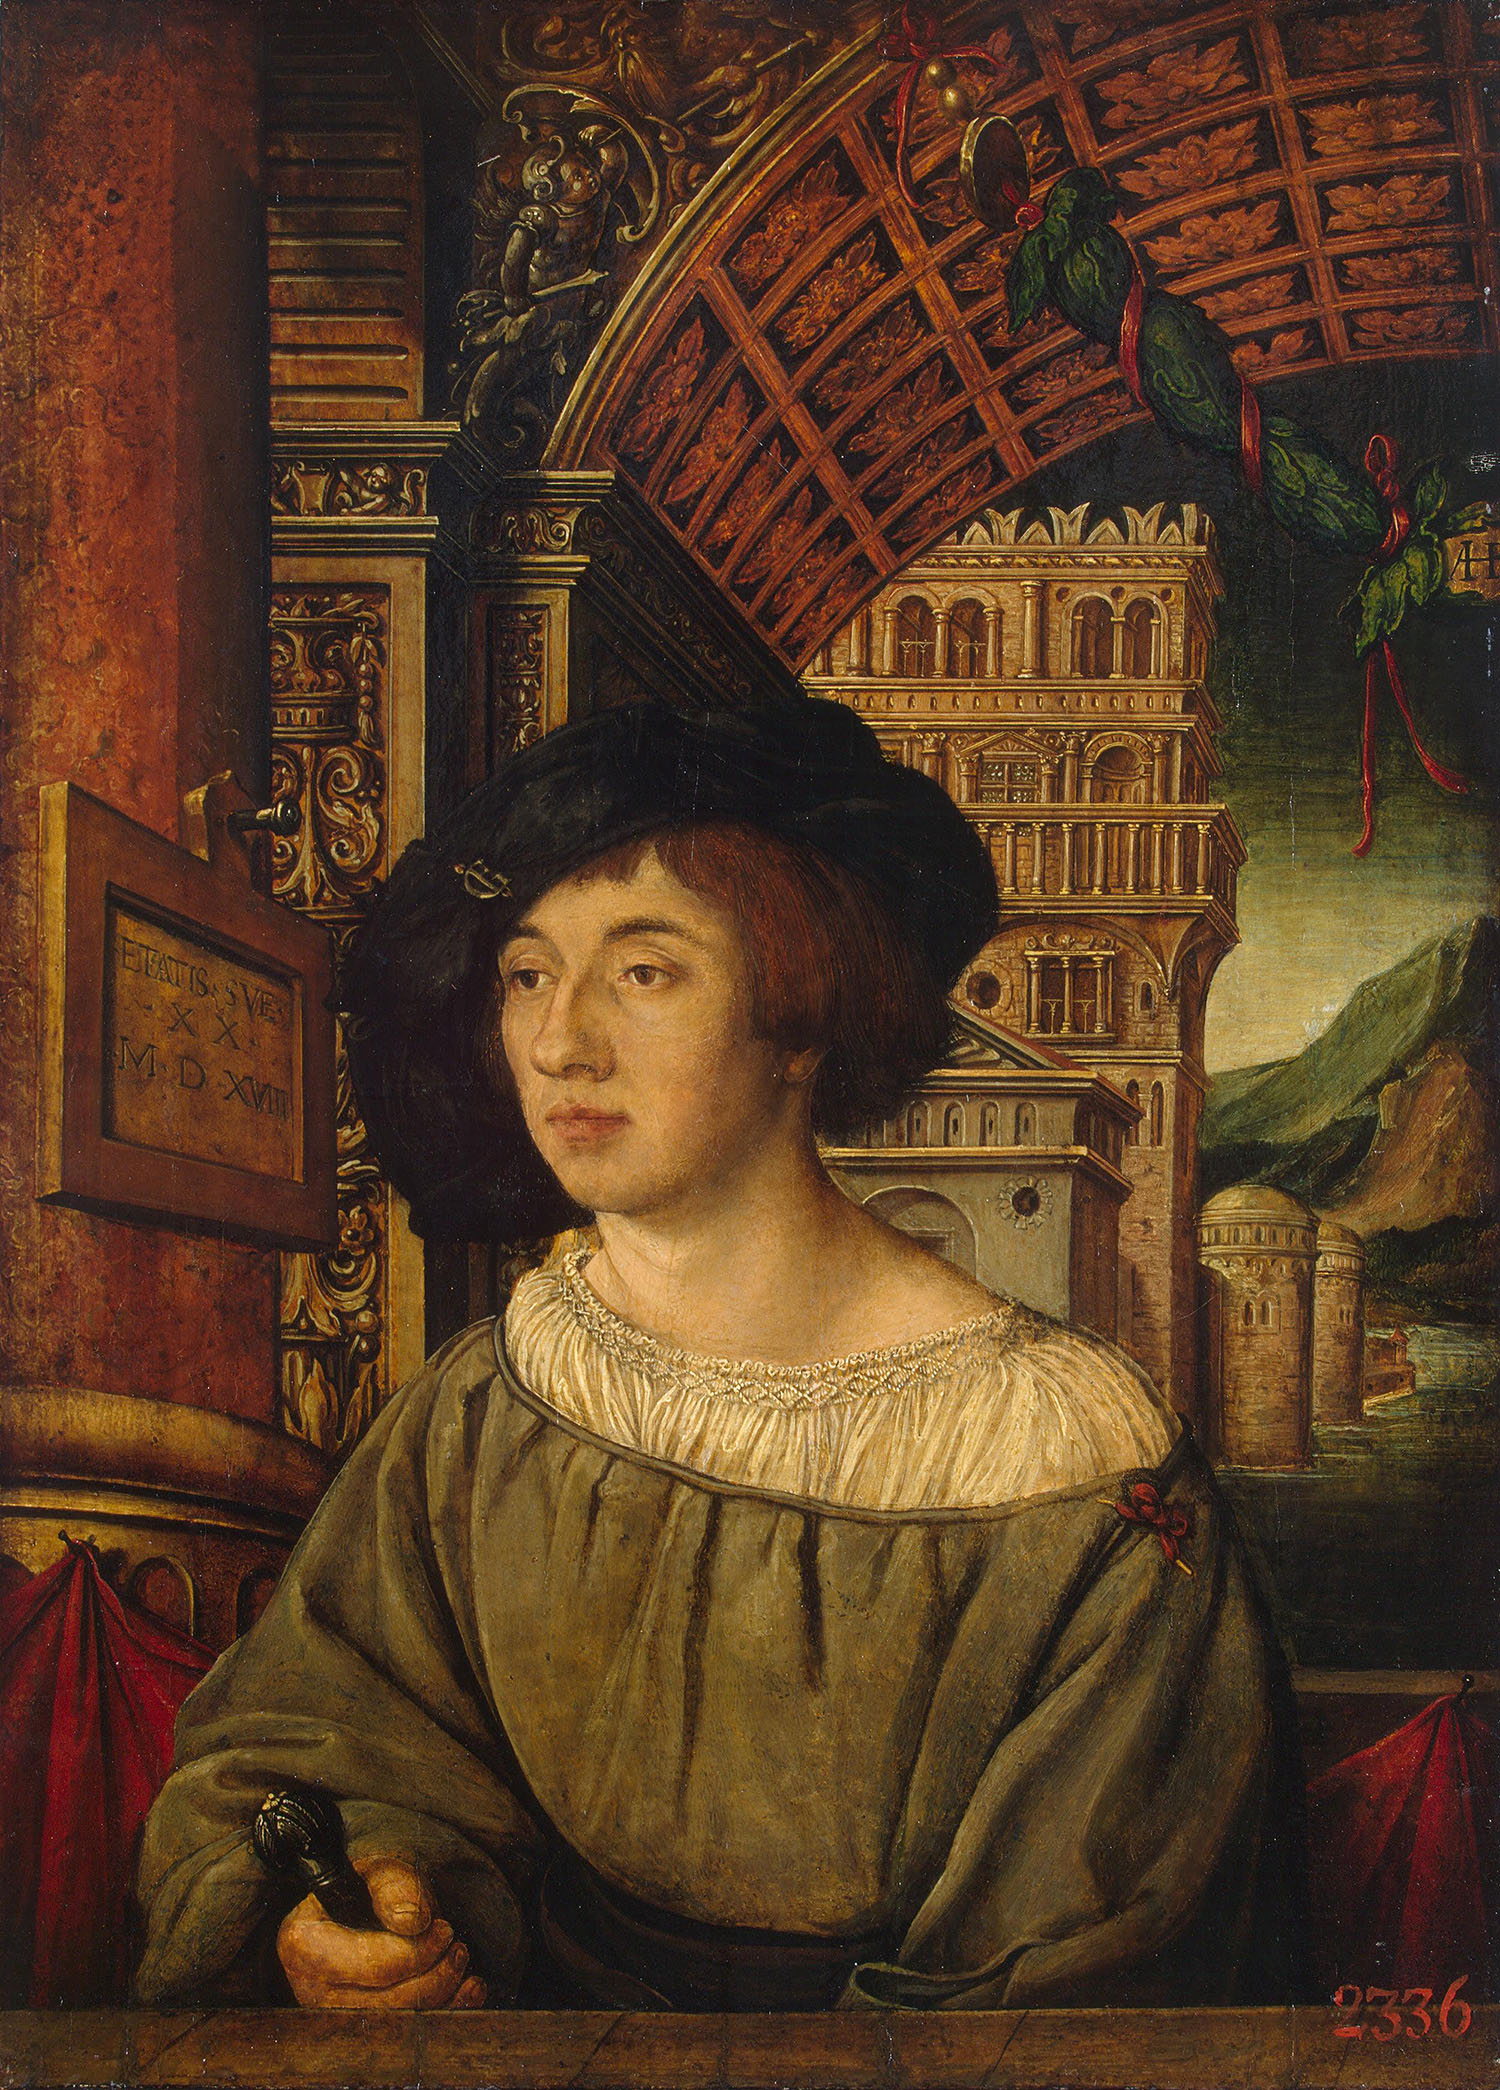 Амброзиус Гольбейн. "Портрет молодого человека". 1518. Эрмитаж, Санкт-Петербург.